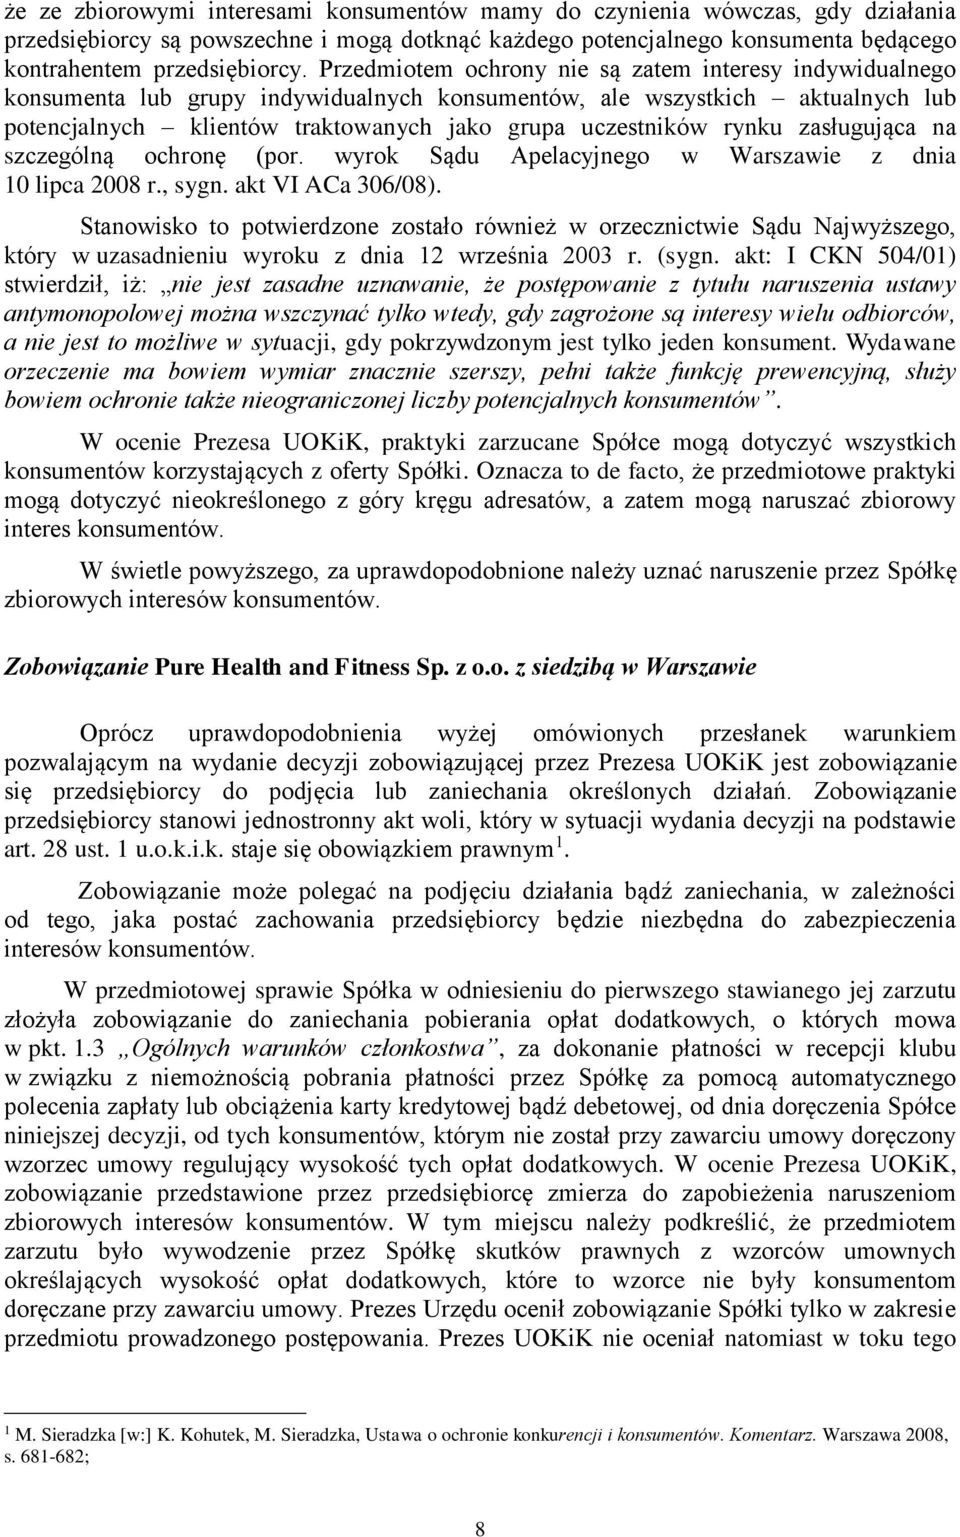 rynku zasługująca na szczególną ochronę (por. wyrok Sądu Apelacyjnego w Warszawie z dnia 10 lipca 2008 r., sygn. akt VI ACa 306/08).